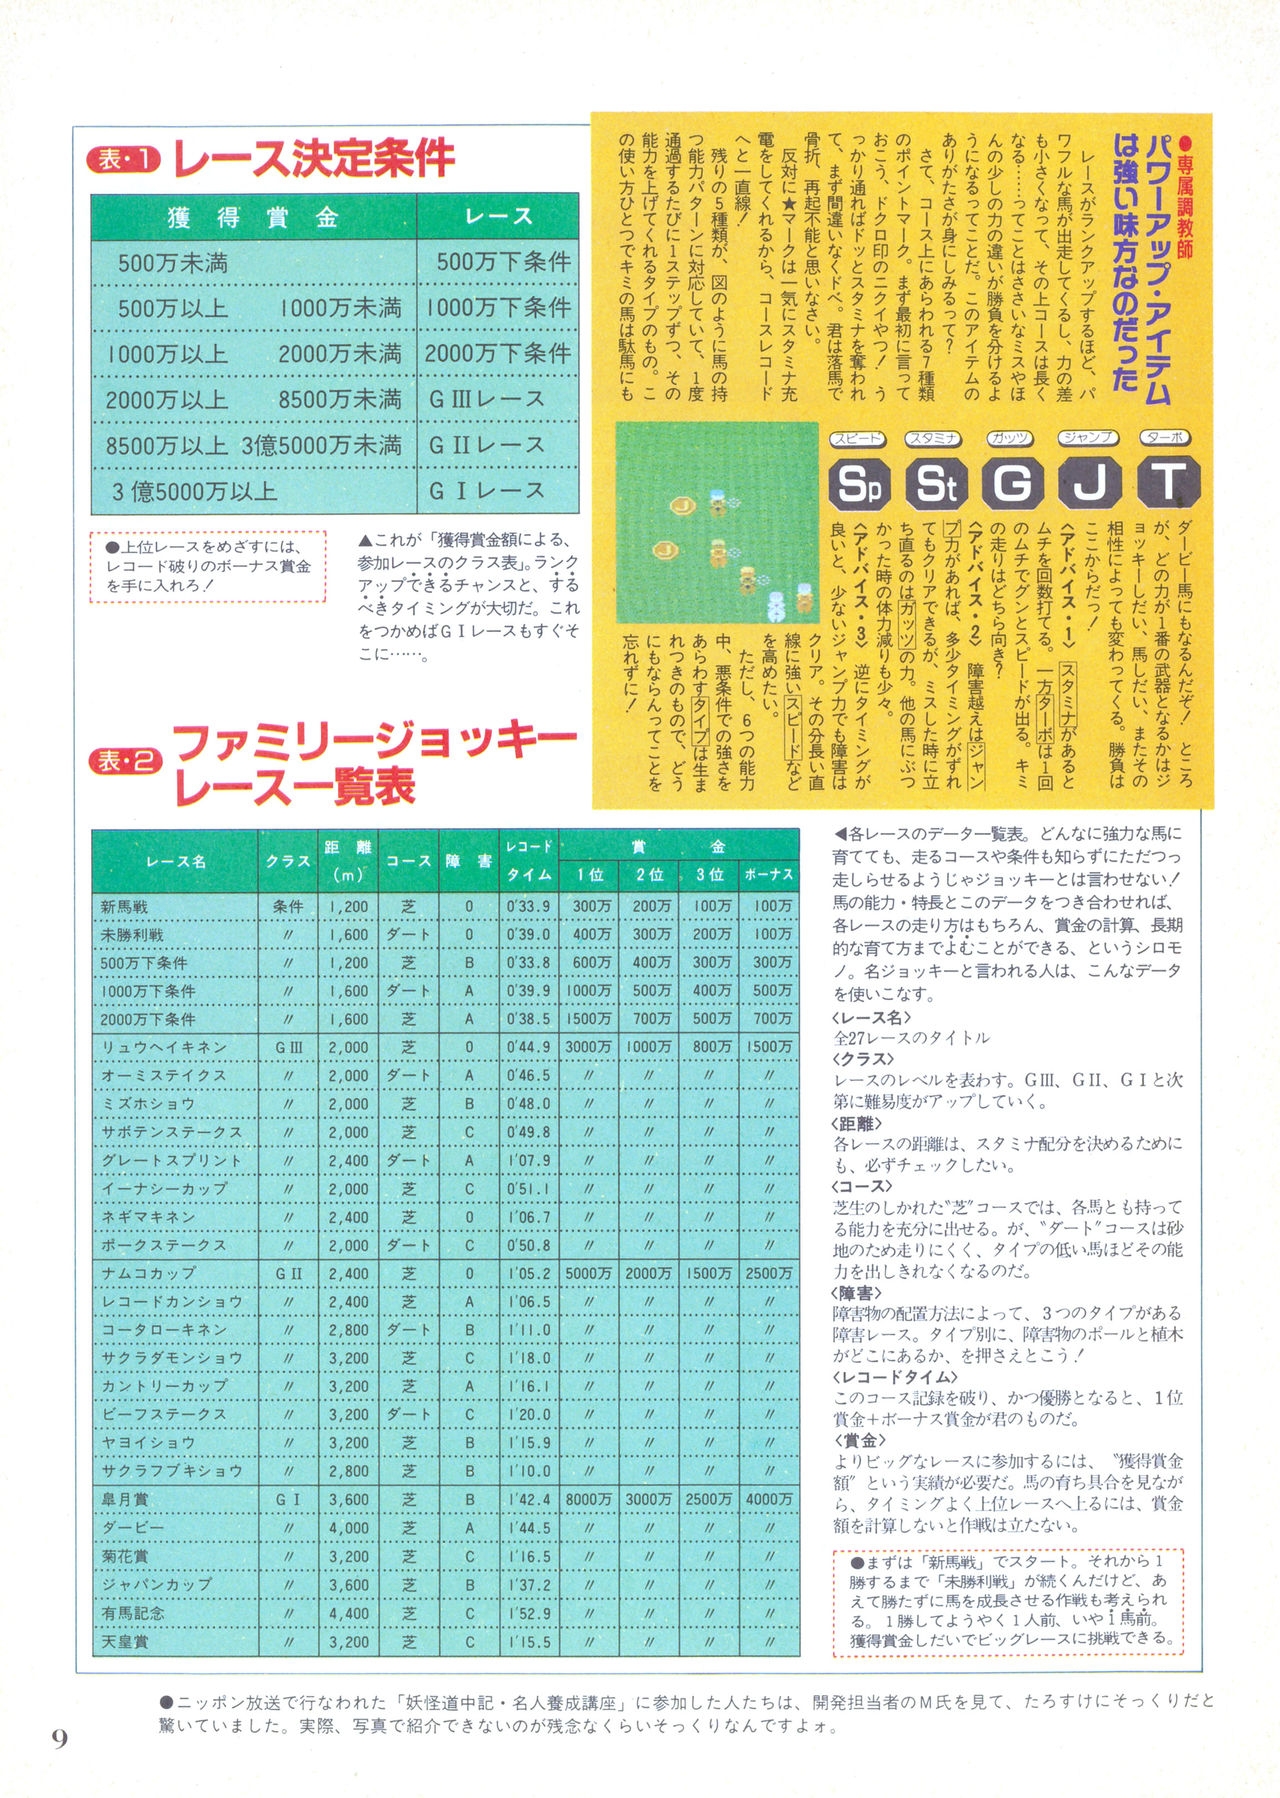 NG Namco Community Magazine 07 8